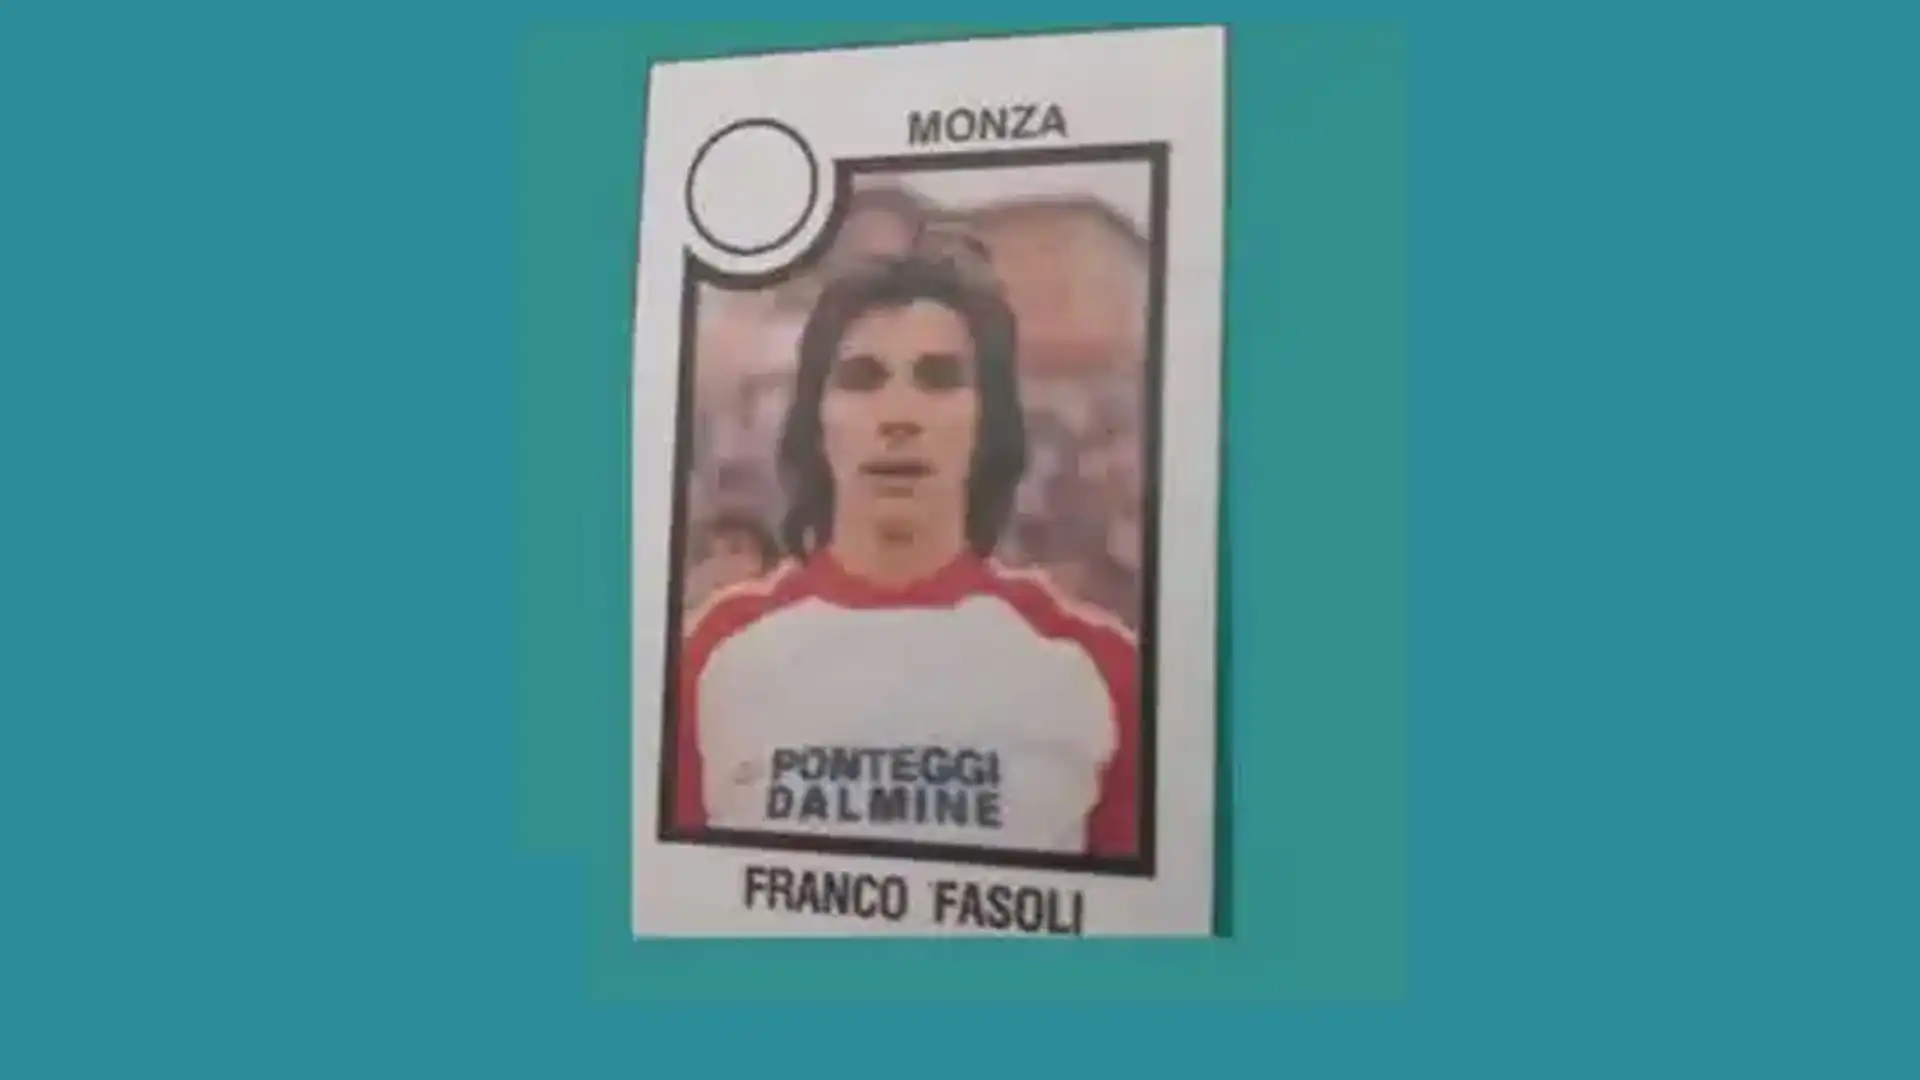 Franco Fasoli, cresciuto nel Milan, ha giocato anche con Monza, Bari e Foggia (foto Figurine Panini)